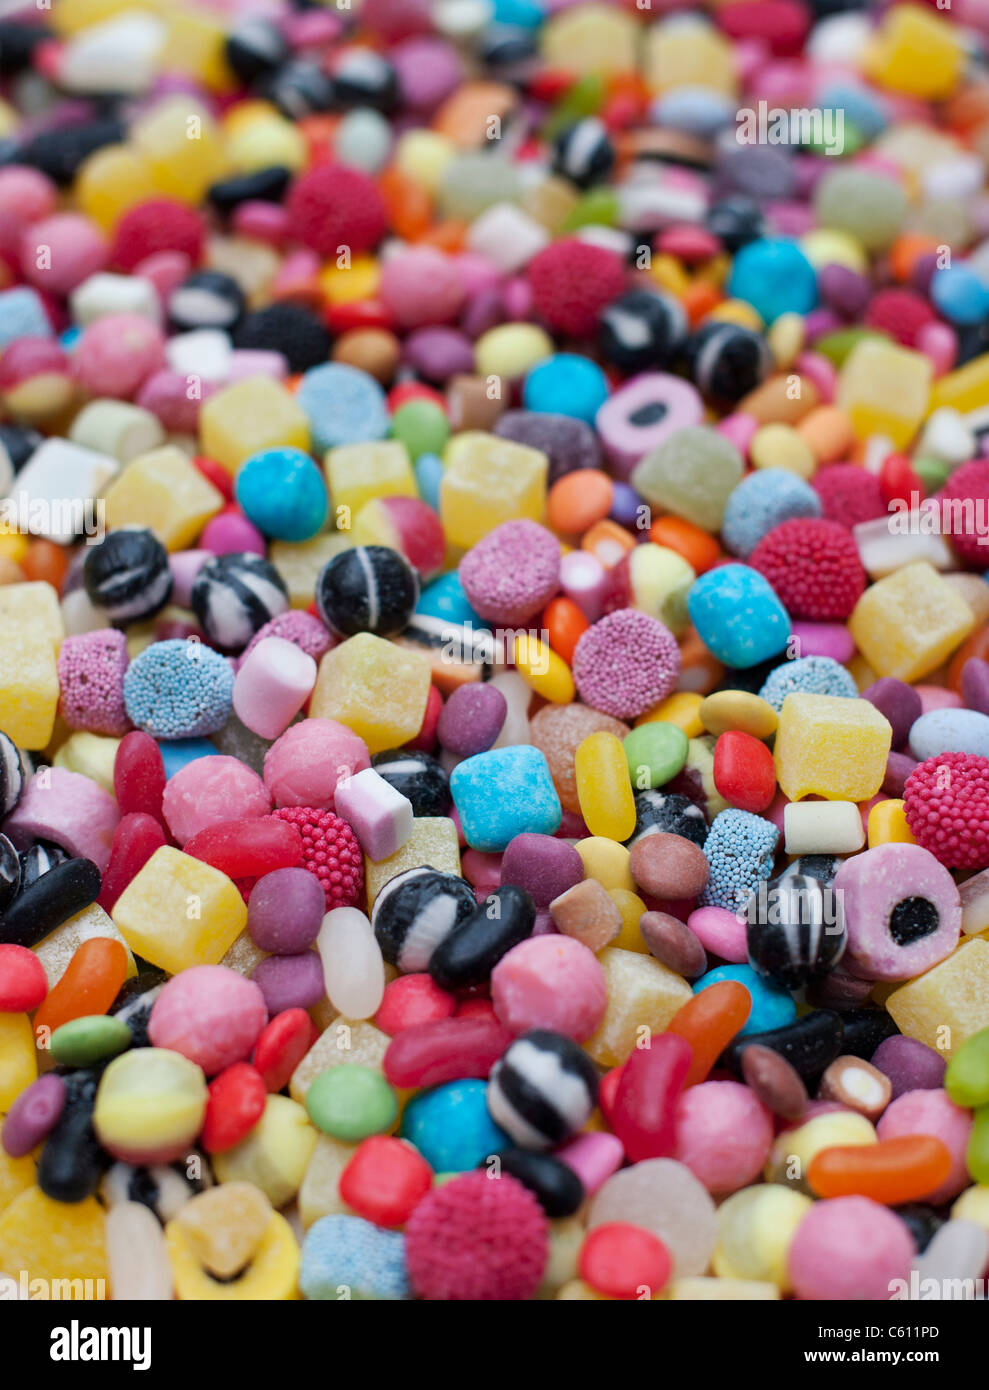 Assortiment de bonbons colorés pour enfants et des bonbons. La farandole de réglisse, Smarties, ananas en cubes, humbugs, bonbons, dragées et mélanges dolly Banque D'Images